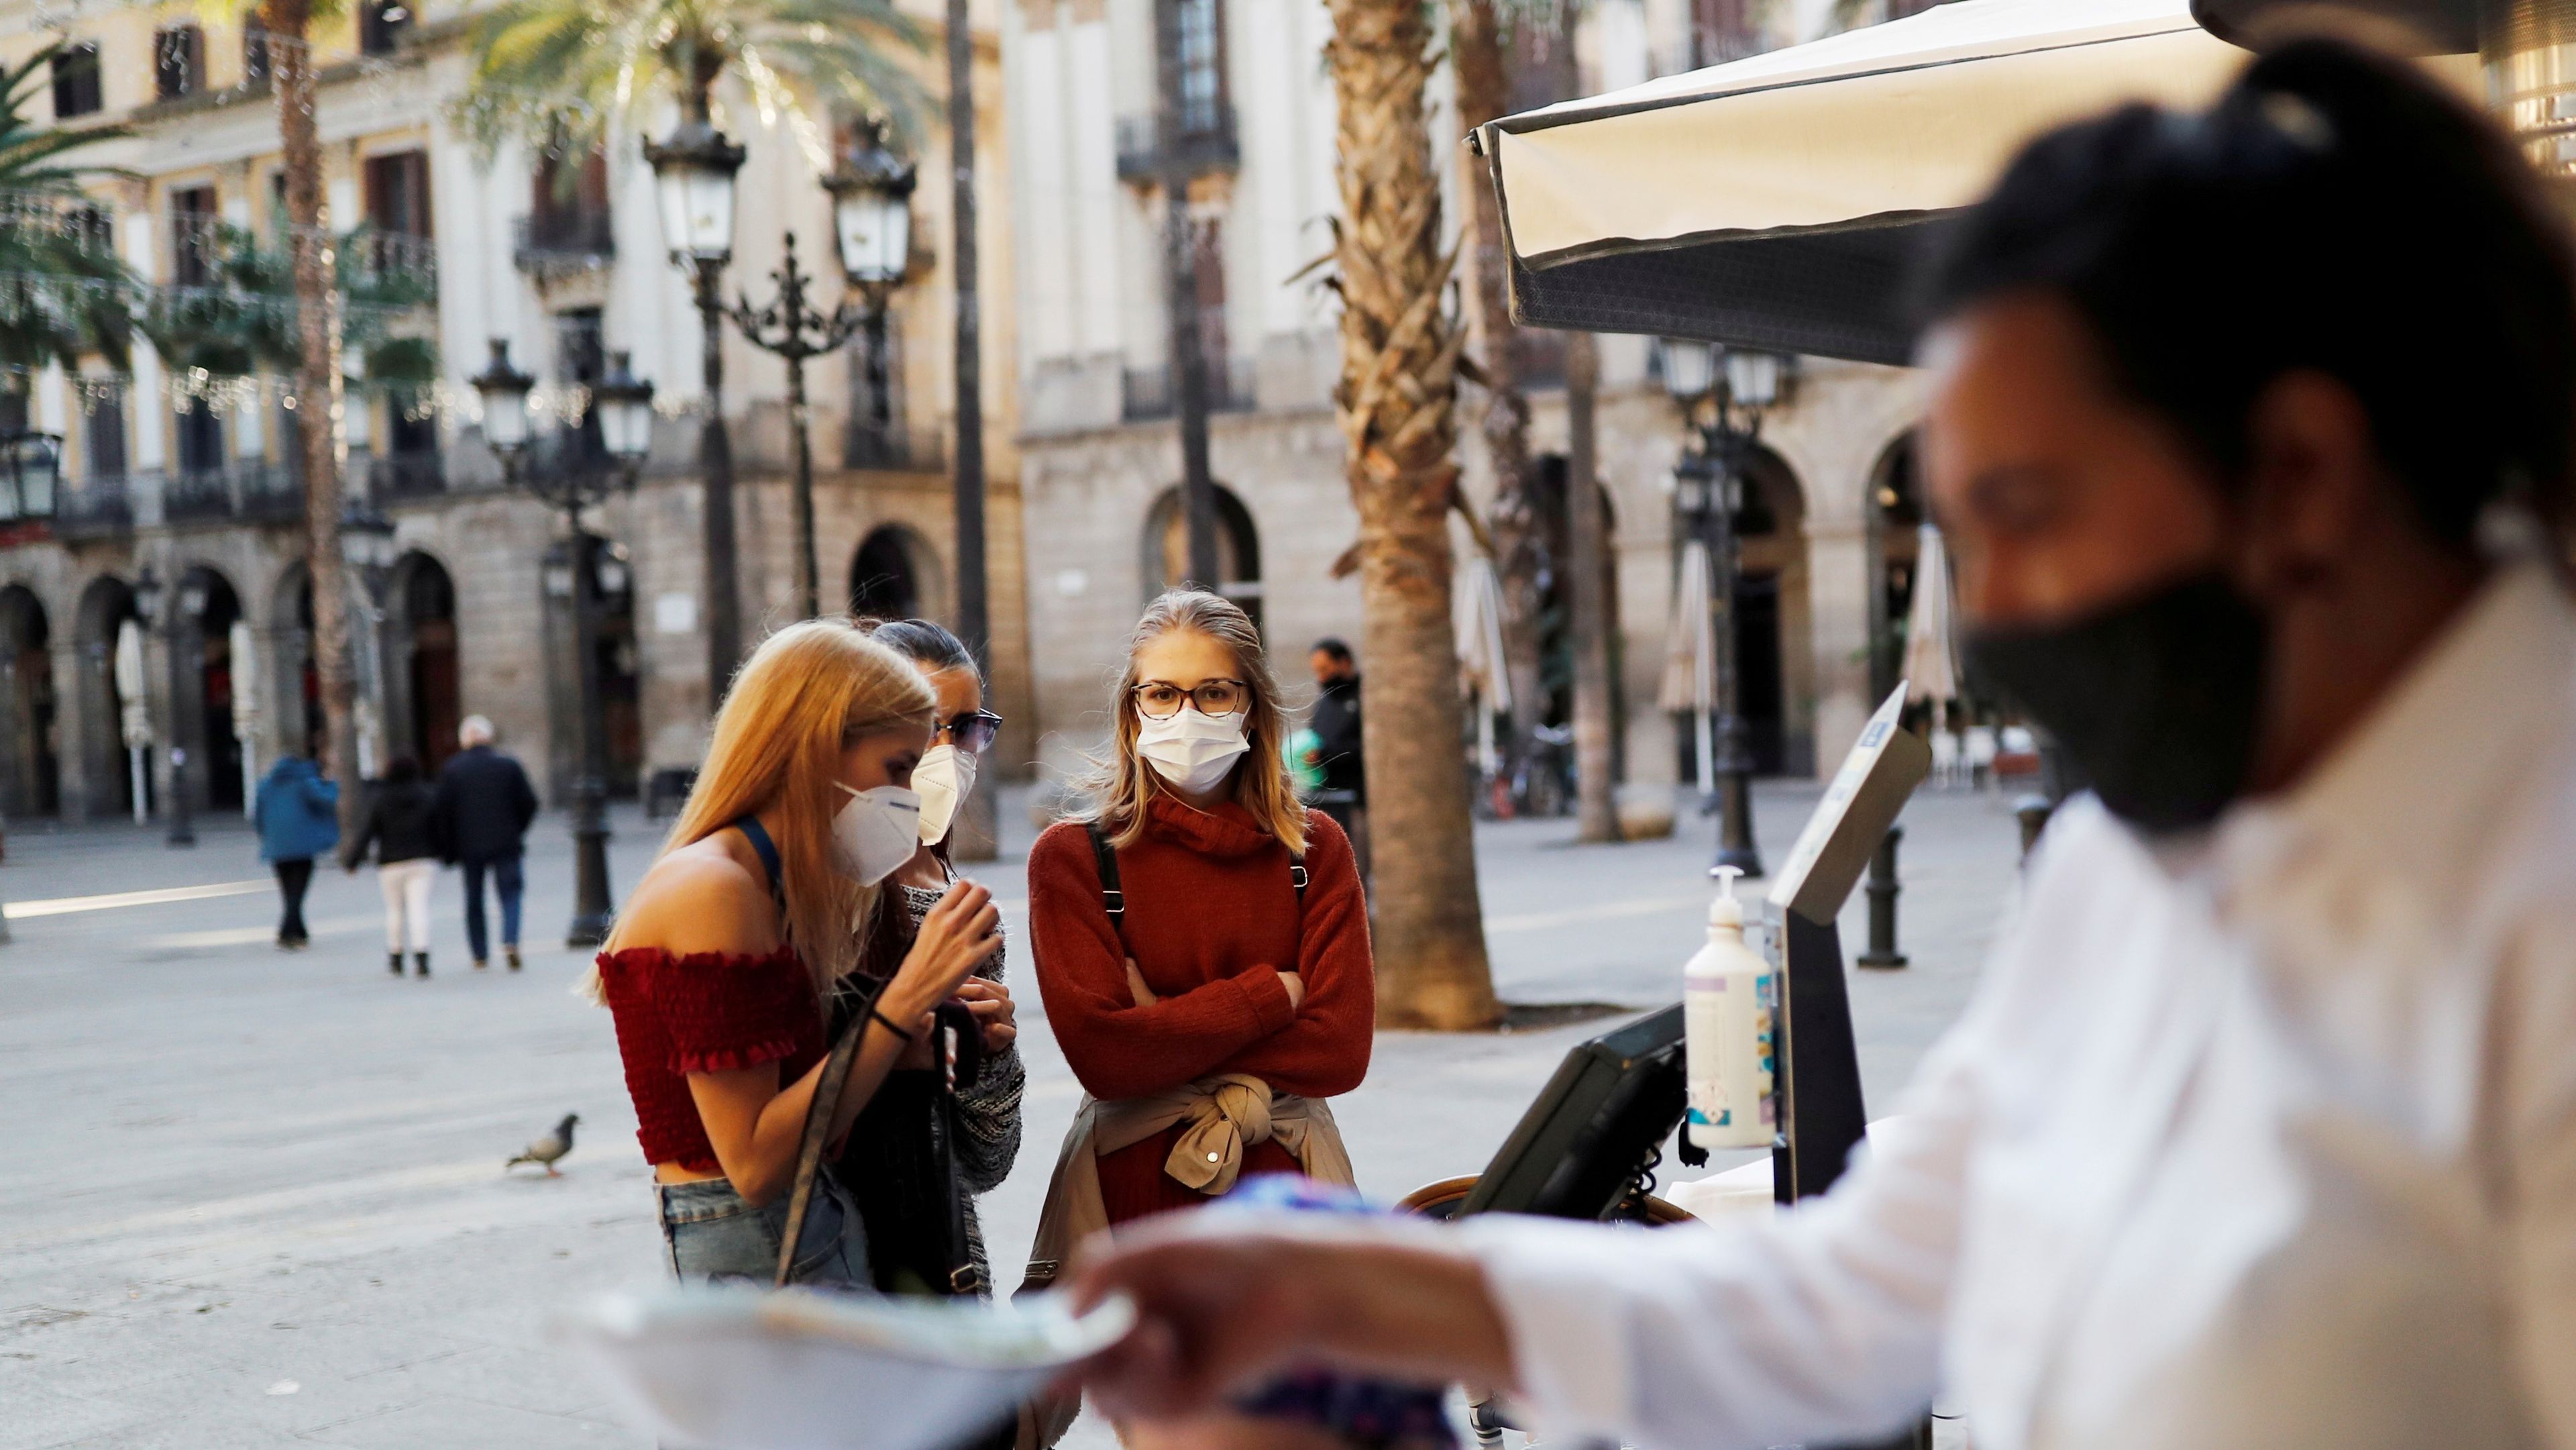 Chicas esperando en la terraza de un bar en Barcelona durante la pandemia de COVID-19.